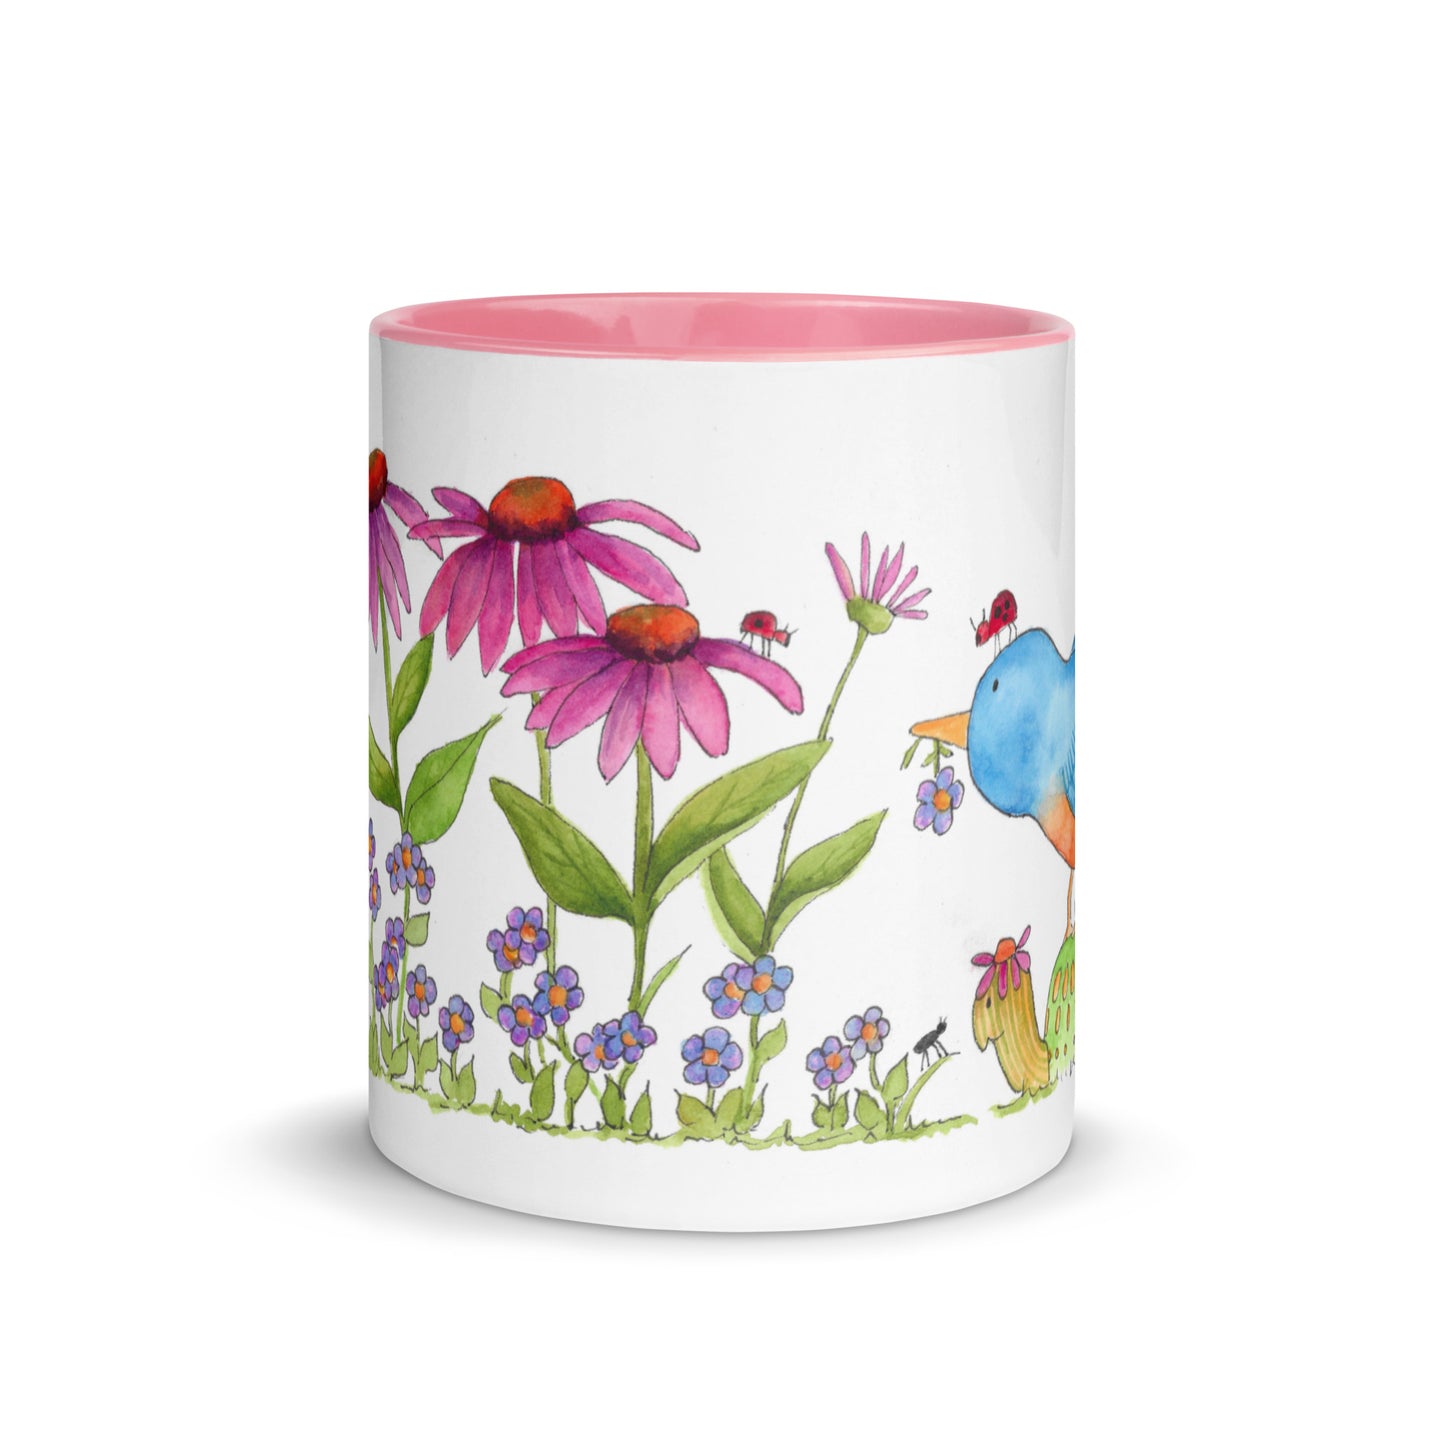 "Flowers for a Friend" Coffee or Tea Mug